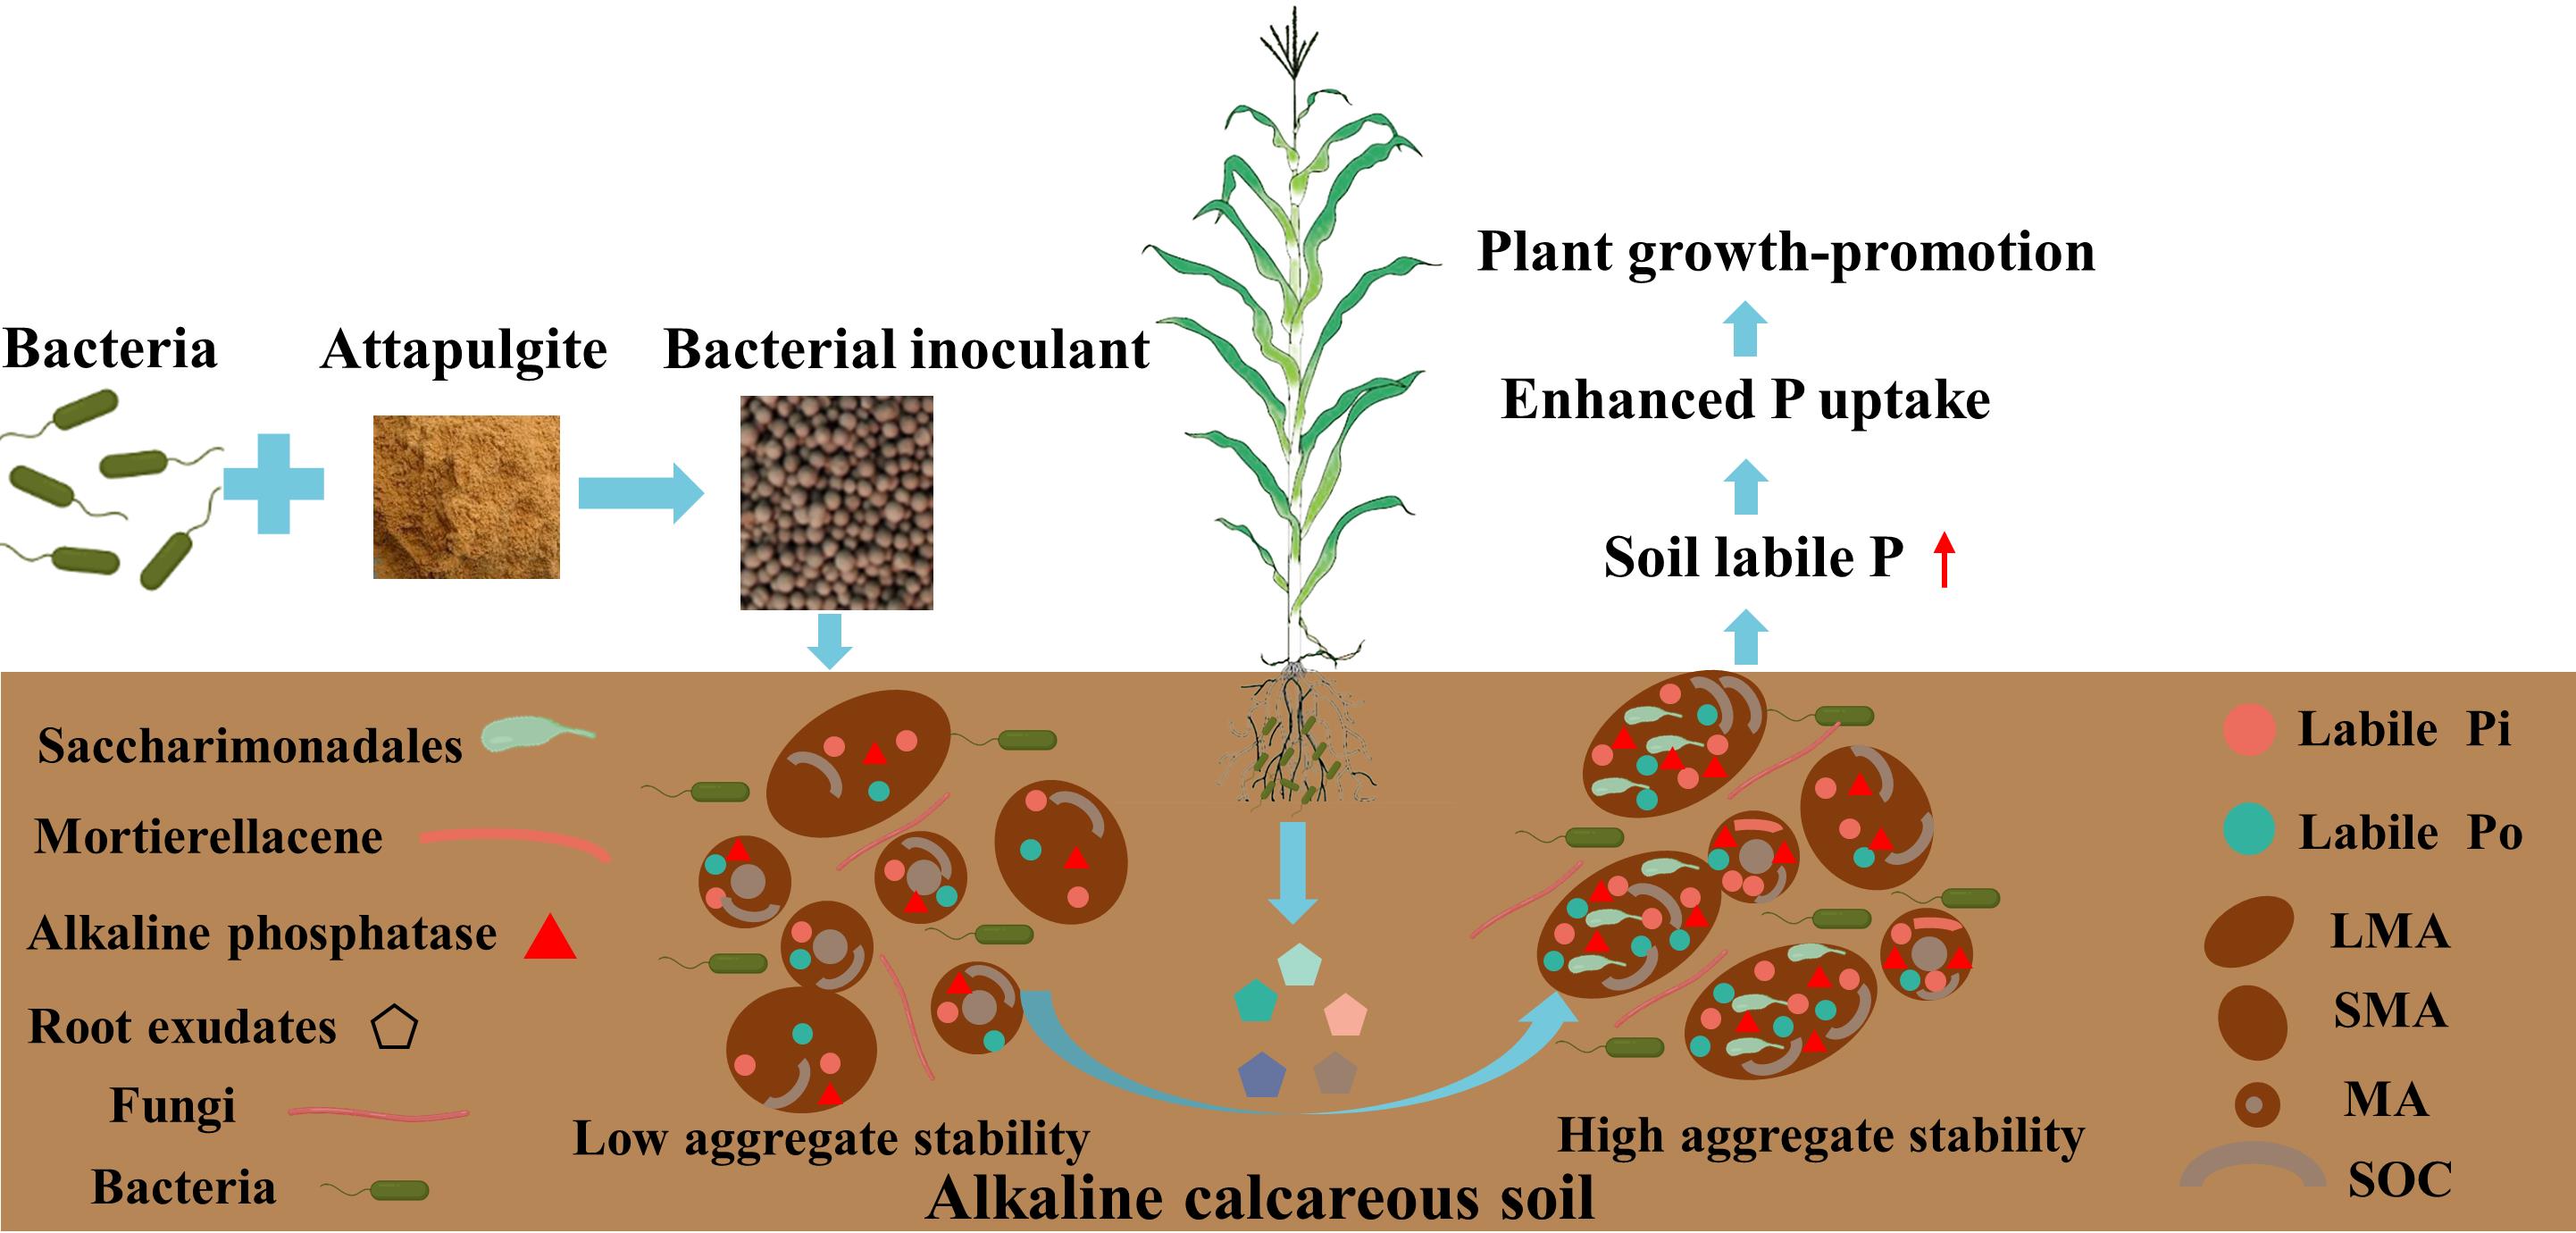 固态粒状细菌惯性增强液层土壤磷可用性以促进肥壮